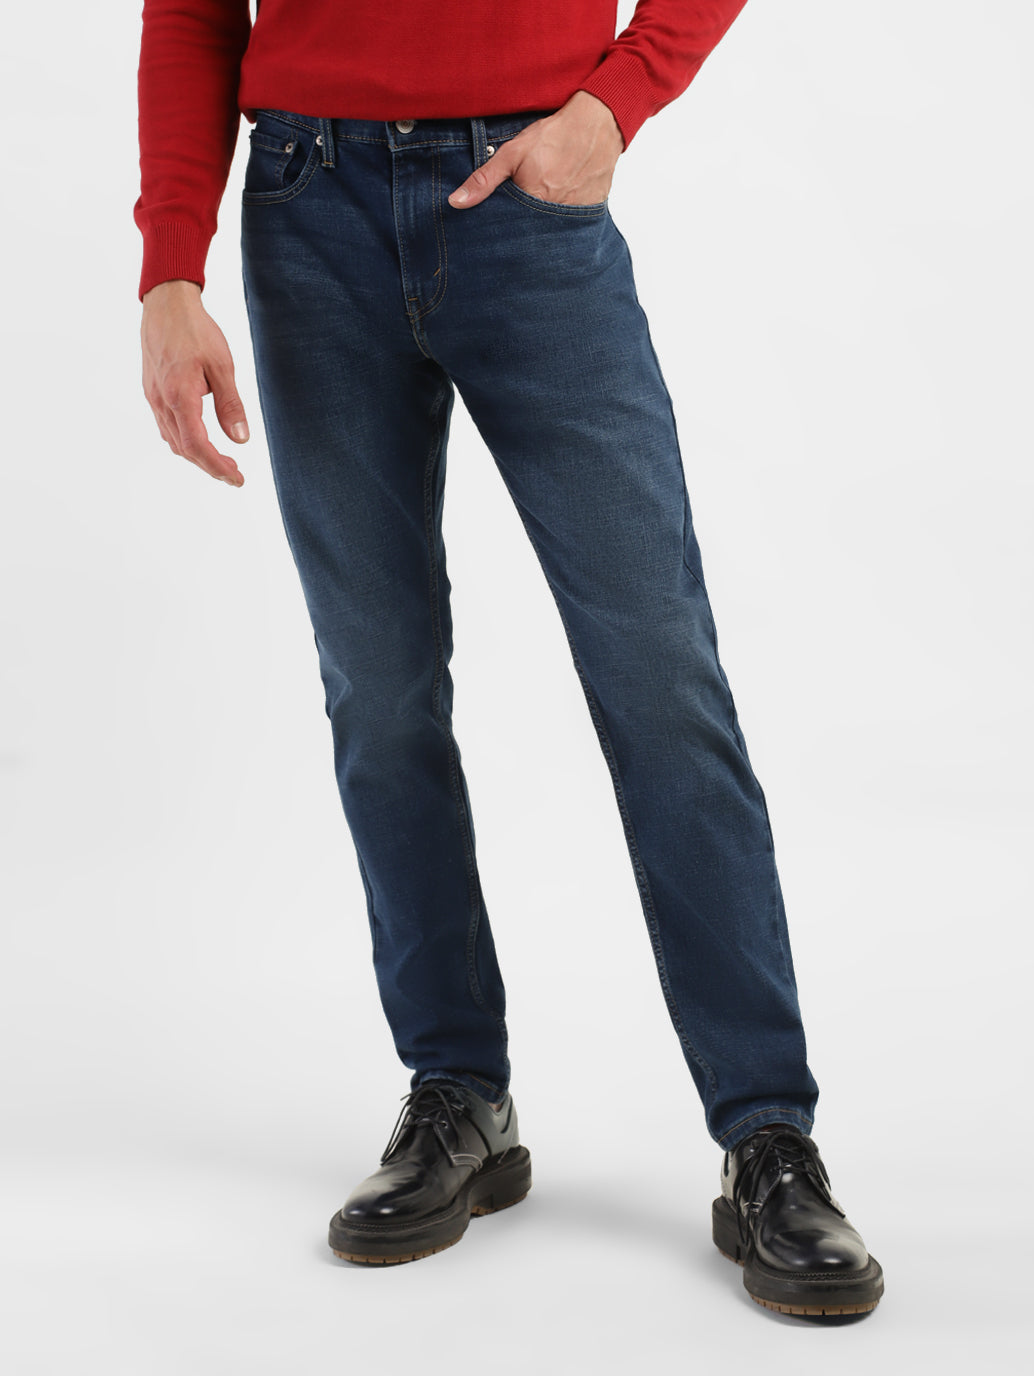 Men's 512 Slim Tapered Jeans